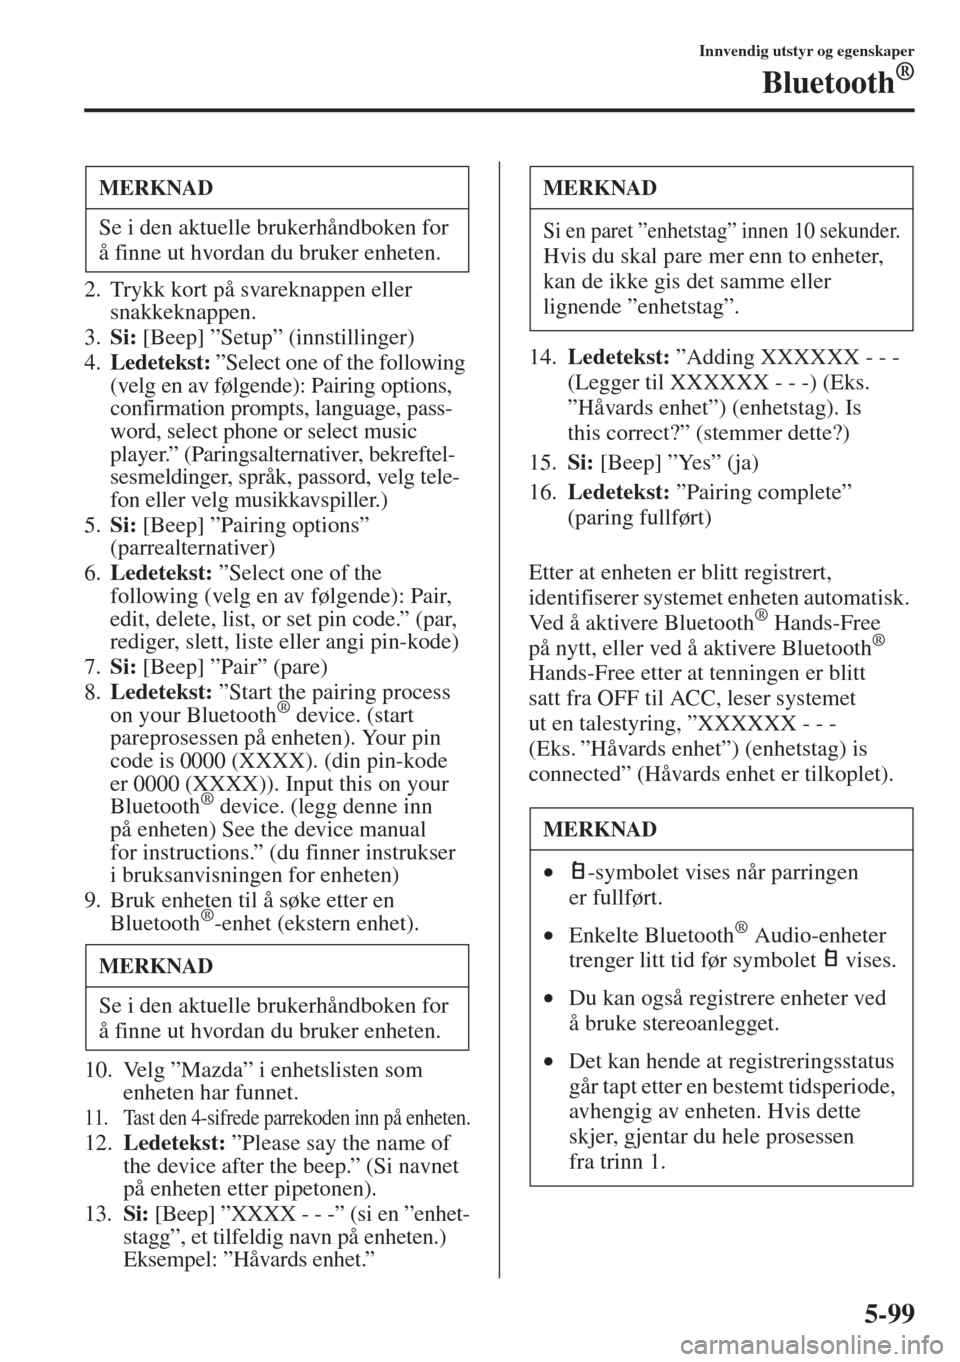 MAZDA MODEL 3 HATCHBACK 2015  Brukerhåndbok (in Norwegian) 5-99
Innvendig utstyr og egenskaper
Bluetooth®
2. Trykk kort på svareknappen eller 
snakkeknappen.
3.Si: [Beep] ”Setup” (innstillinger)
4.Ledetekst: ”Select one of the following 
(velg en av f